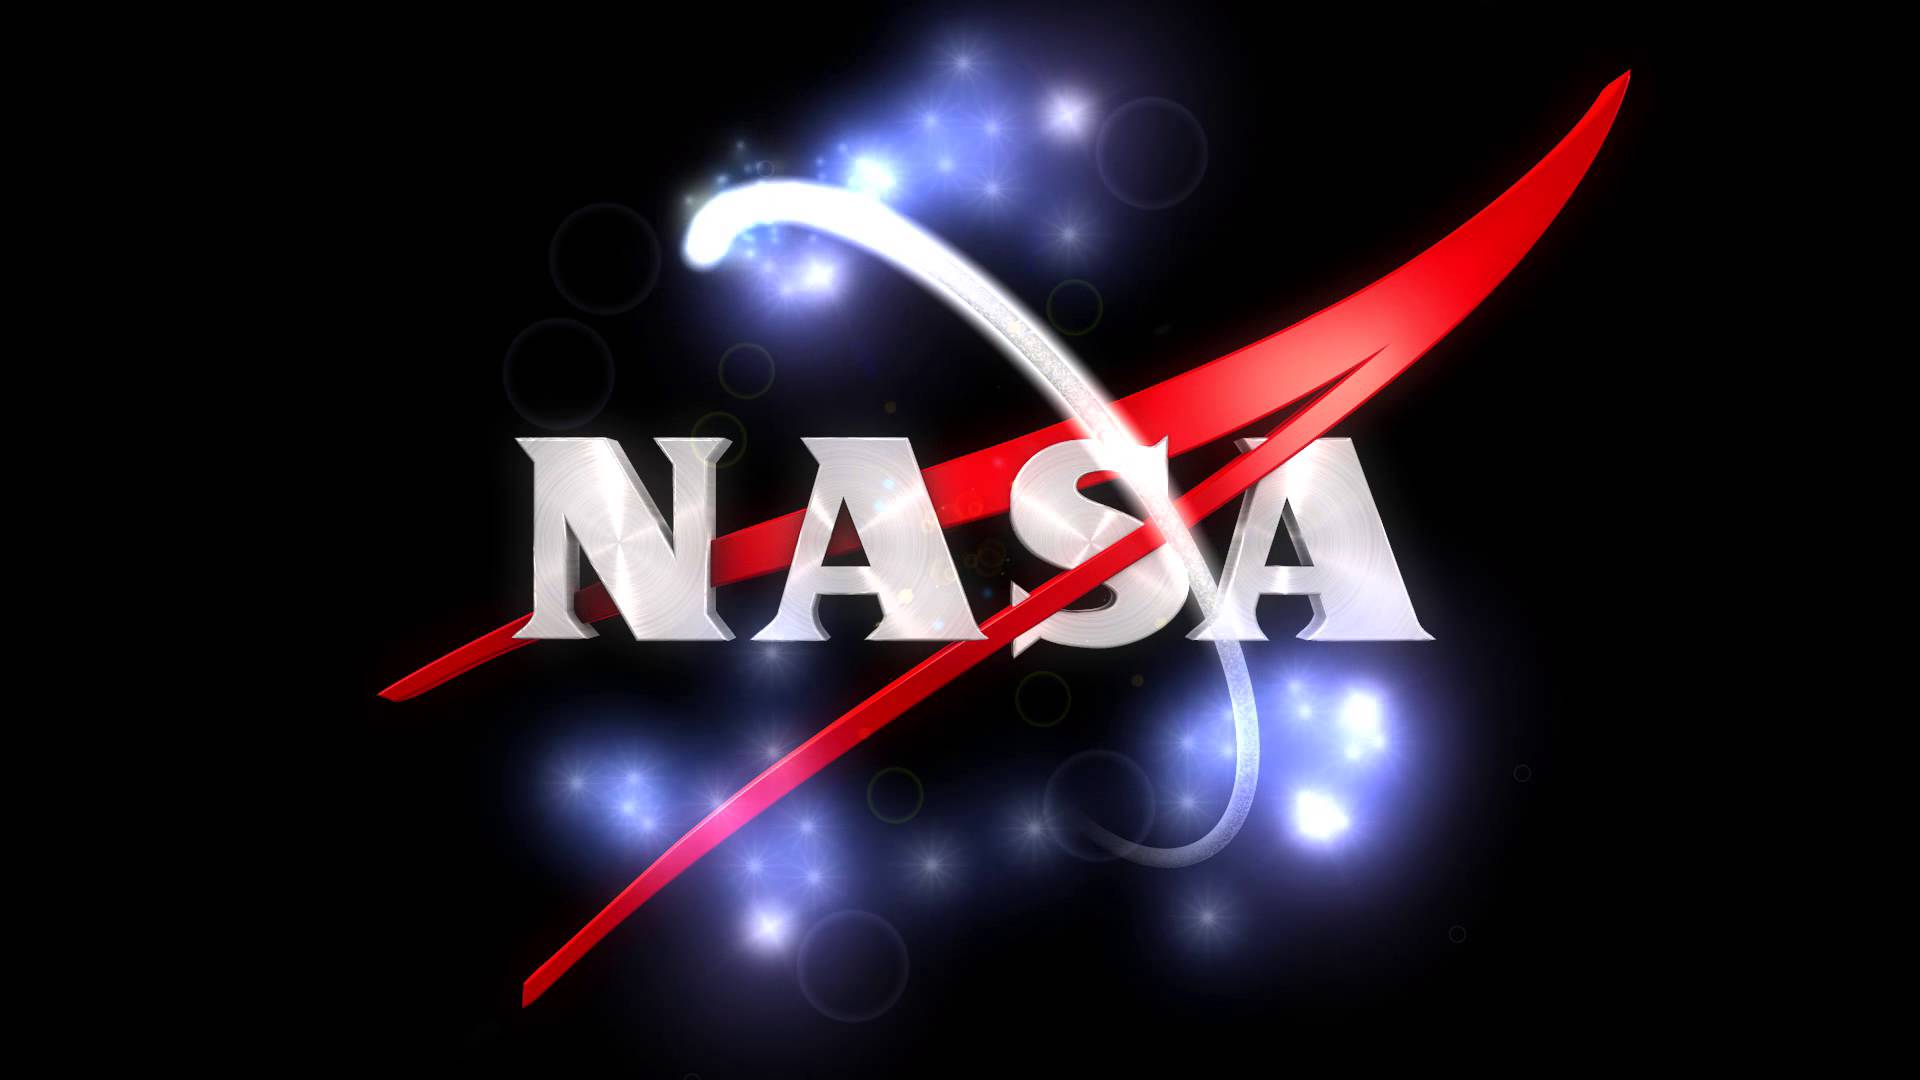 Cool NASA Logo - Nasa Logo Wallpaper